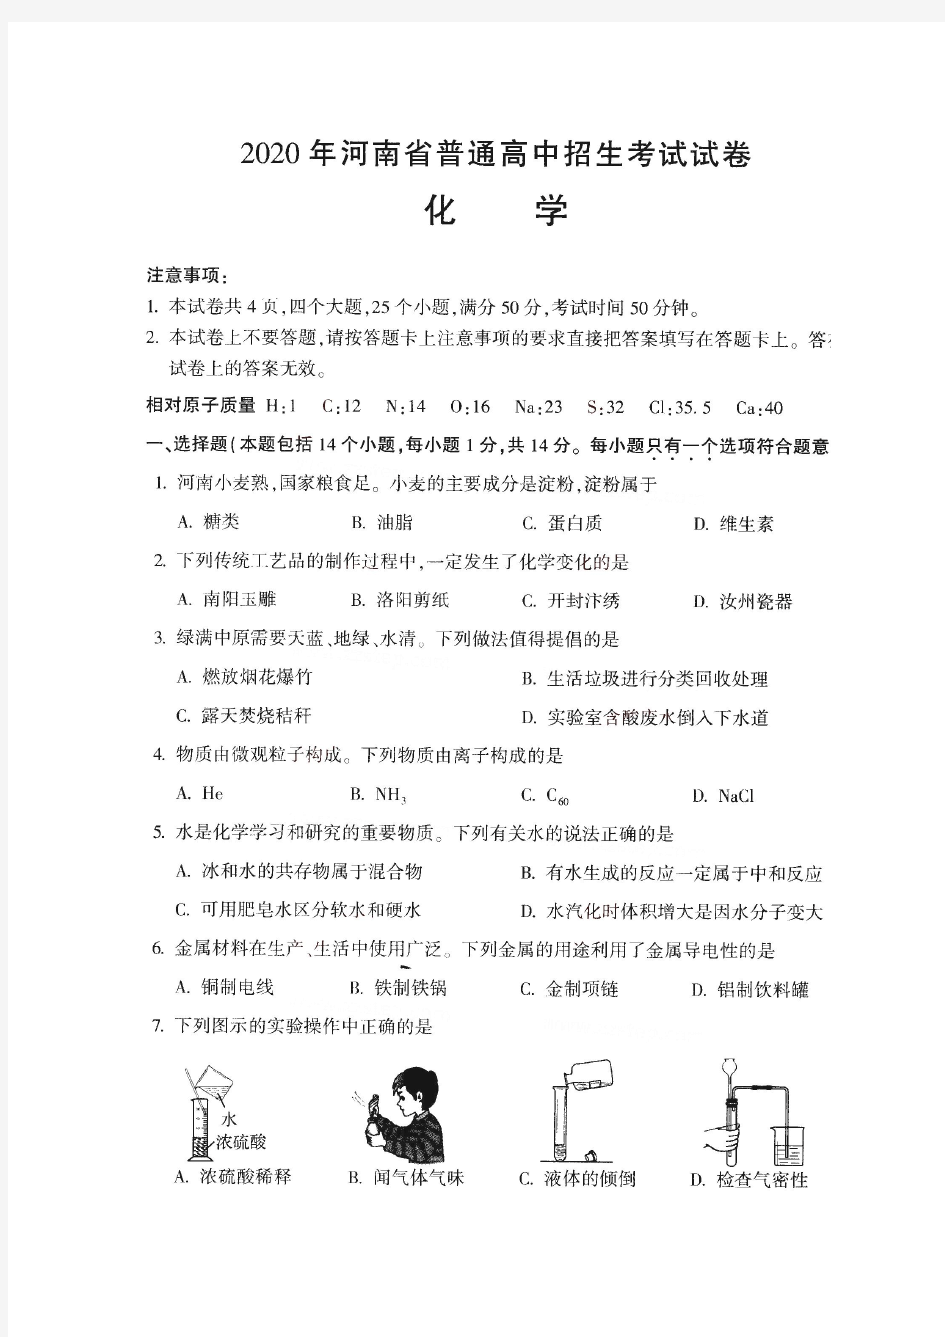 河南省2020年普通高中招生考试试卷化学(图片版,含答案)